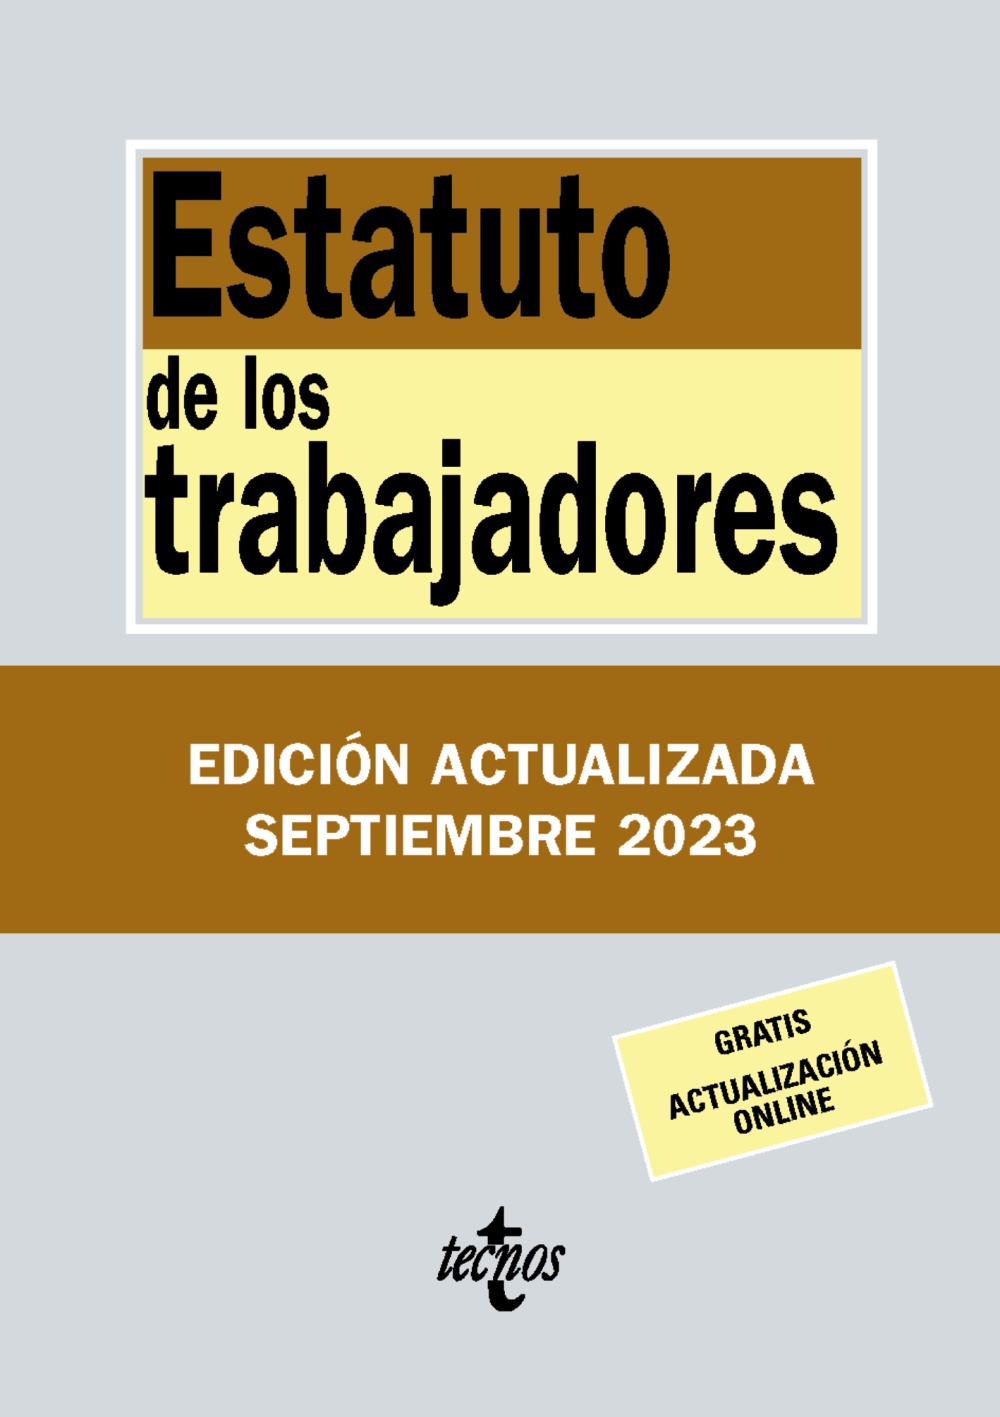 https://www.tecnos.es/imagenes/libros/grande/9788430988389-estatuto-de-los-trabajadores.jpg